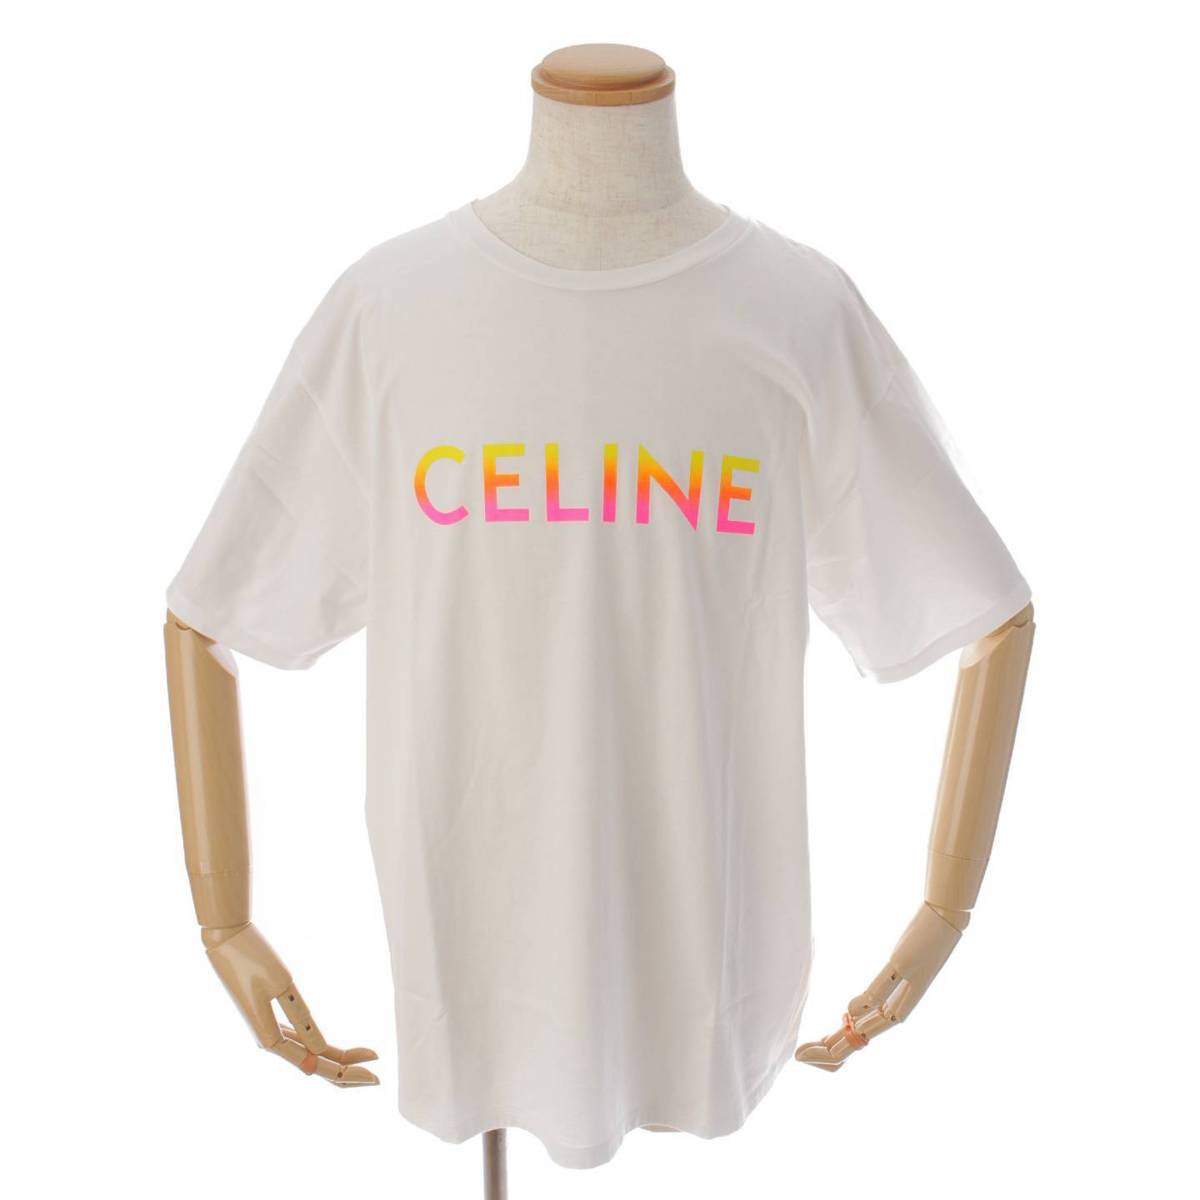 CELINE(セリーヌ)Tシャツ  グラデーション Sサイズ ブラック購入はメルカリになります